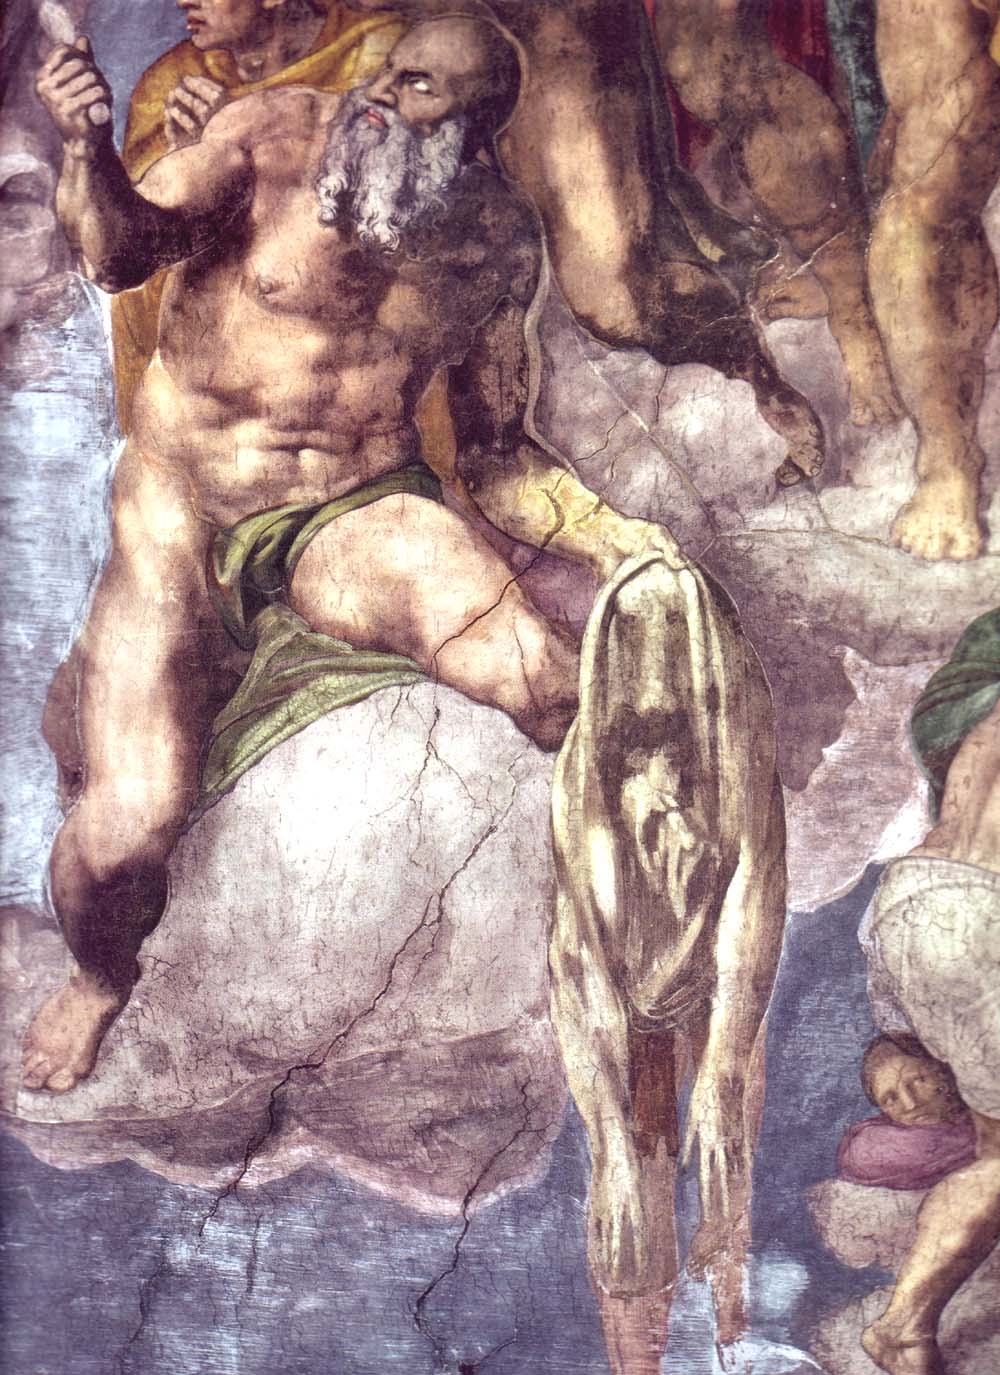 Michelangelo: The Last Judgement